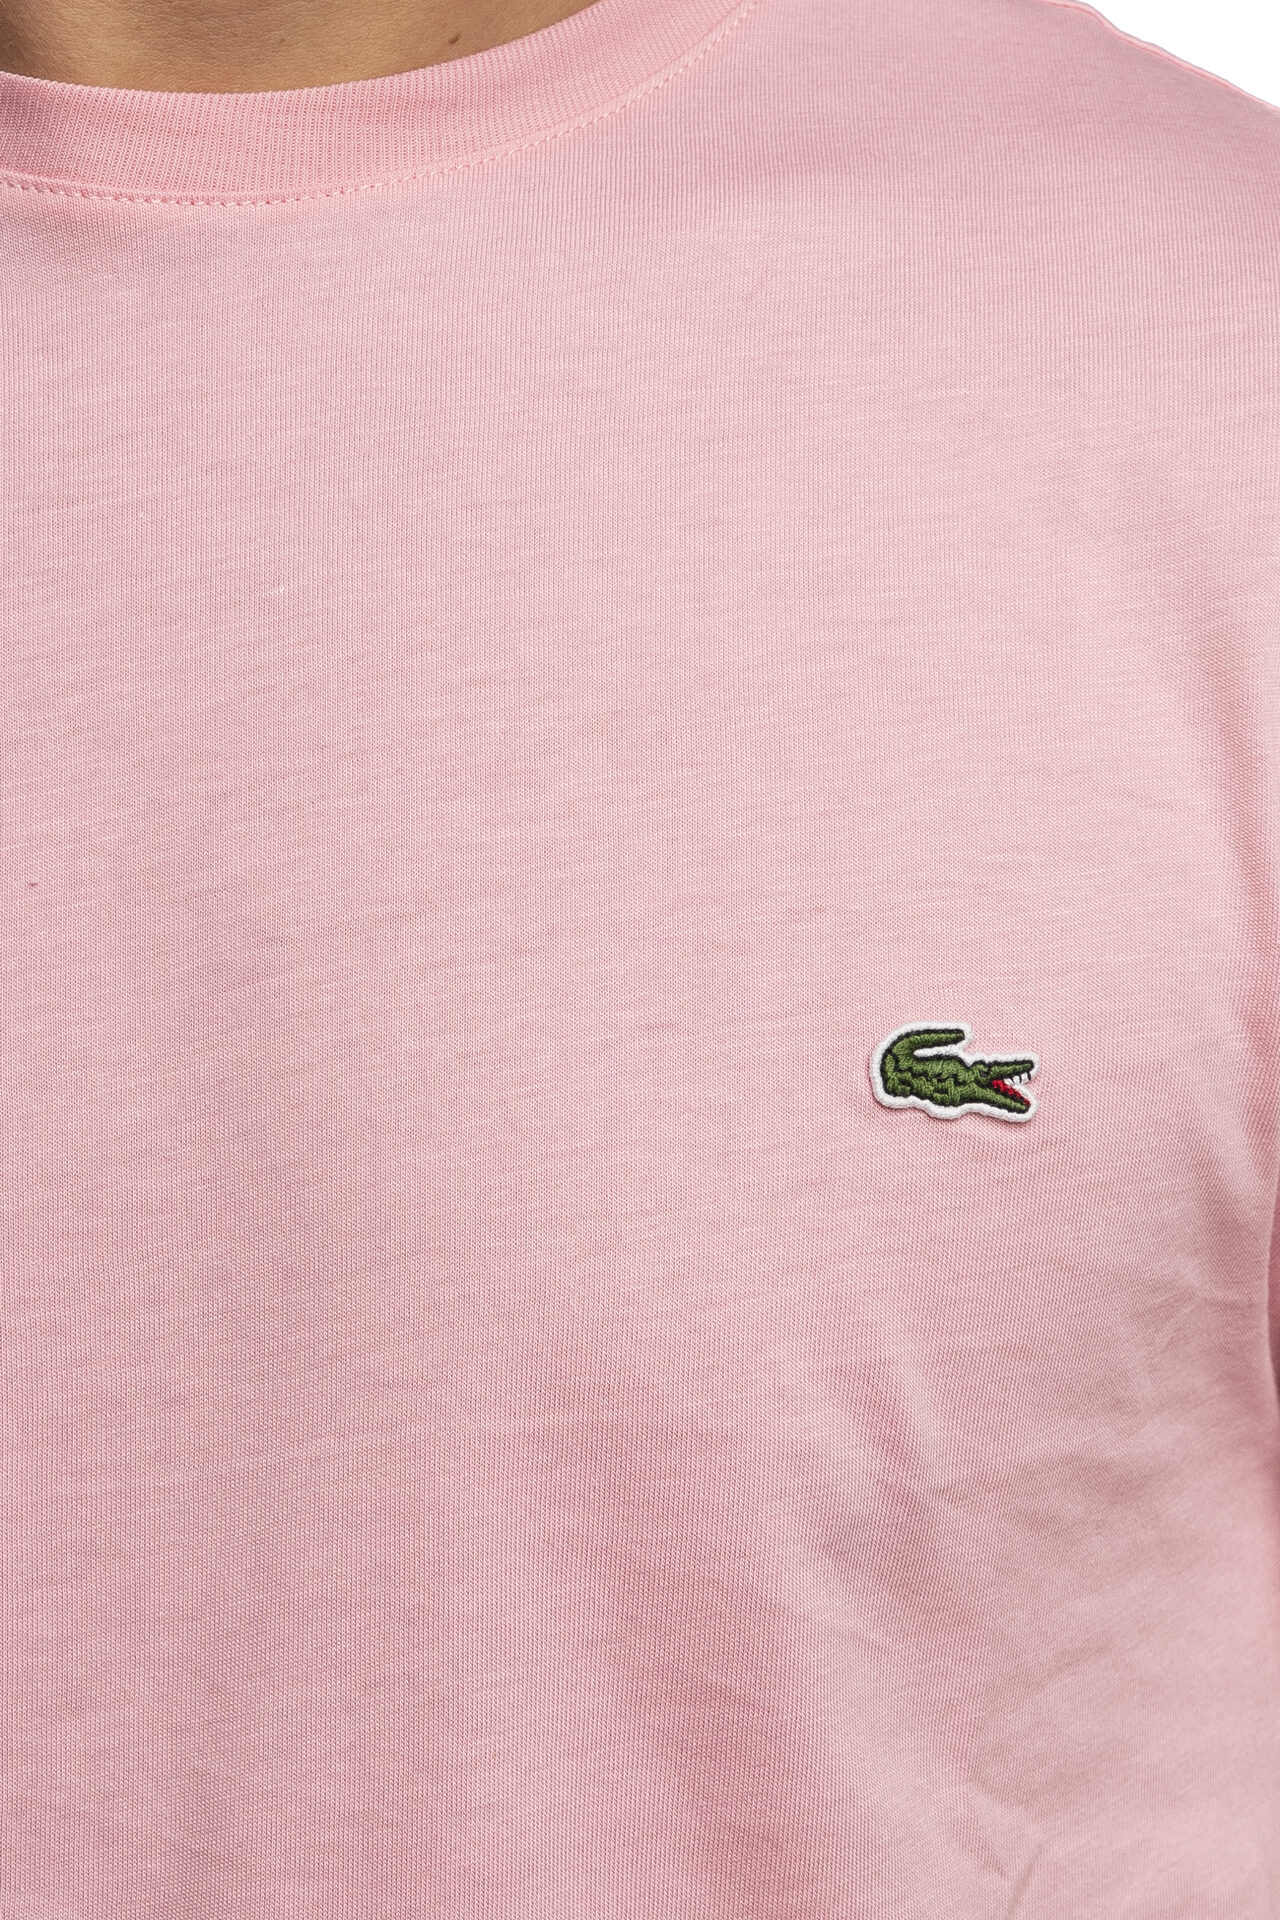 T shirt Lacoste TH2038 da uomo rosa